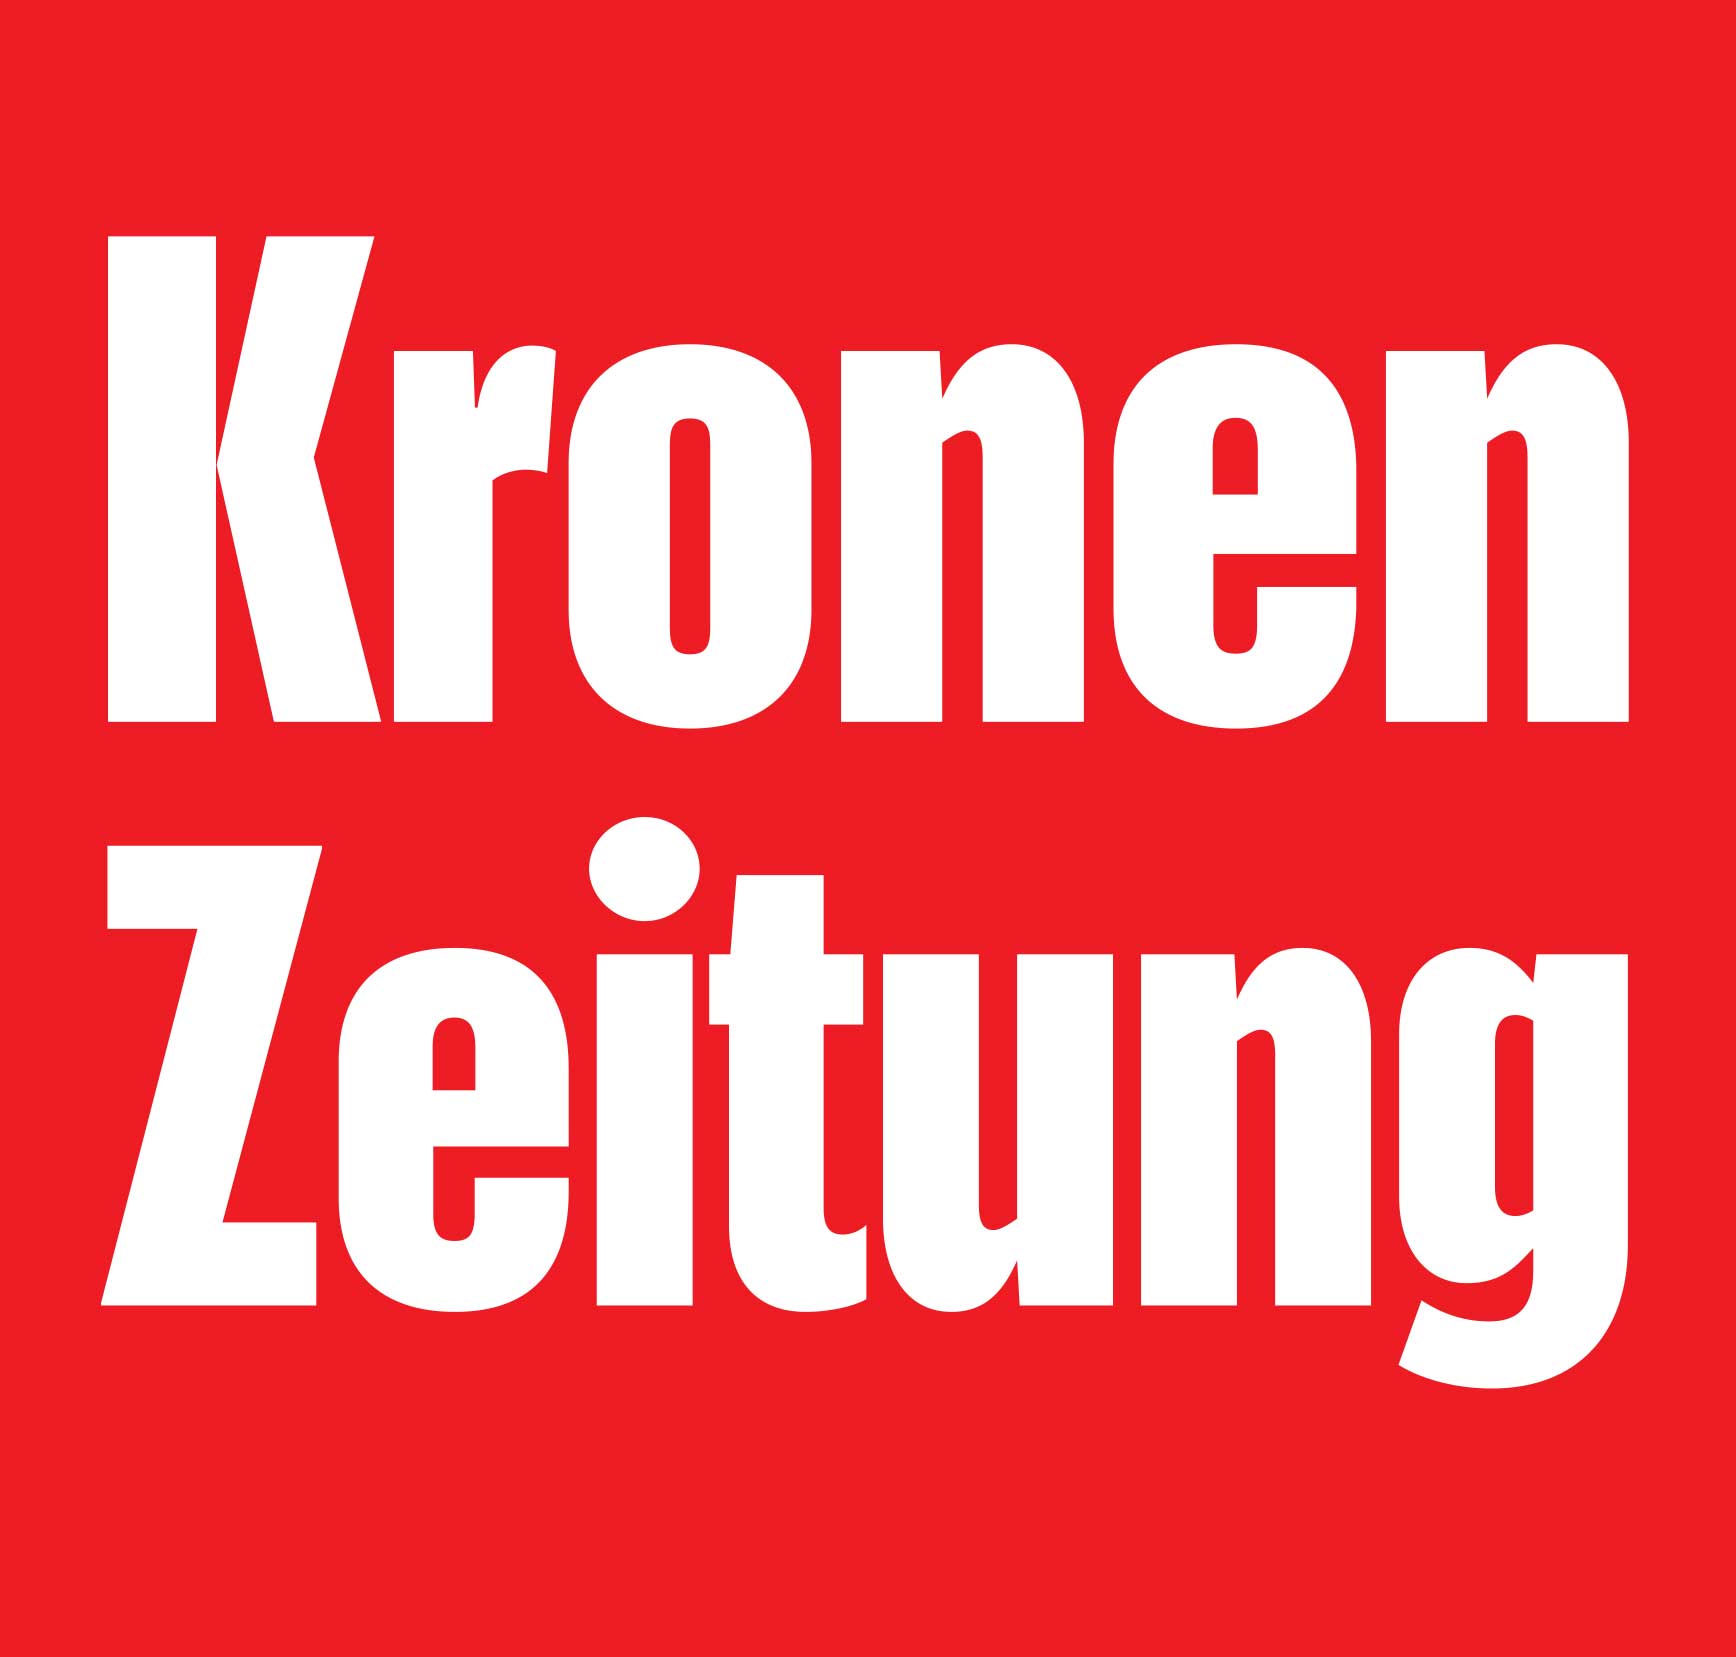 Kronen Zeitung Logo Web